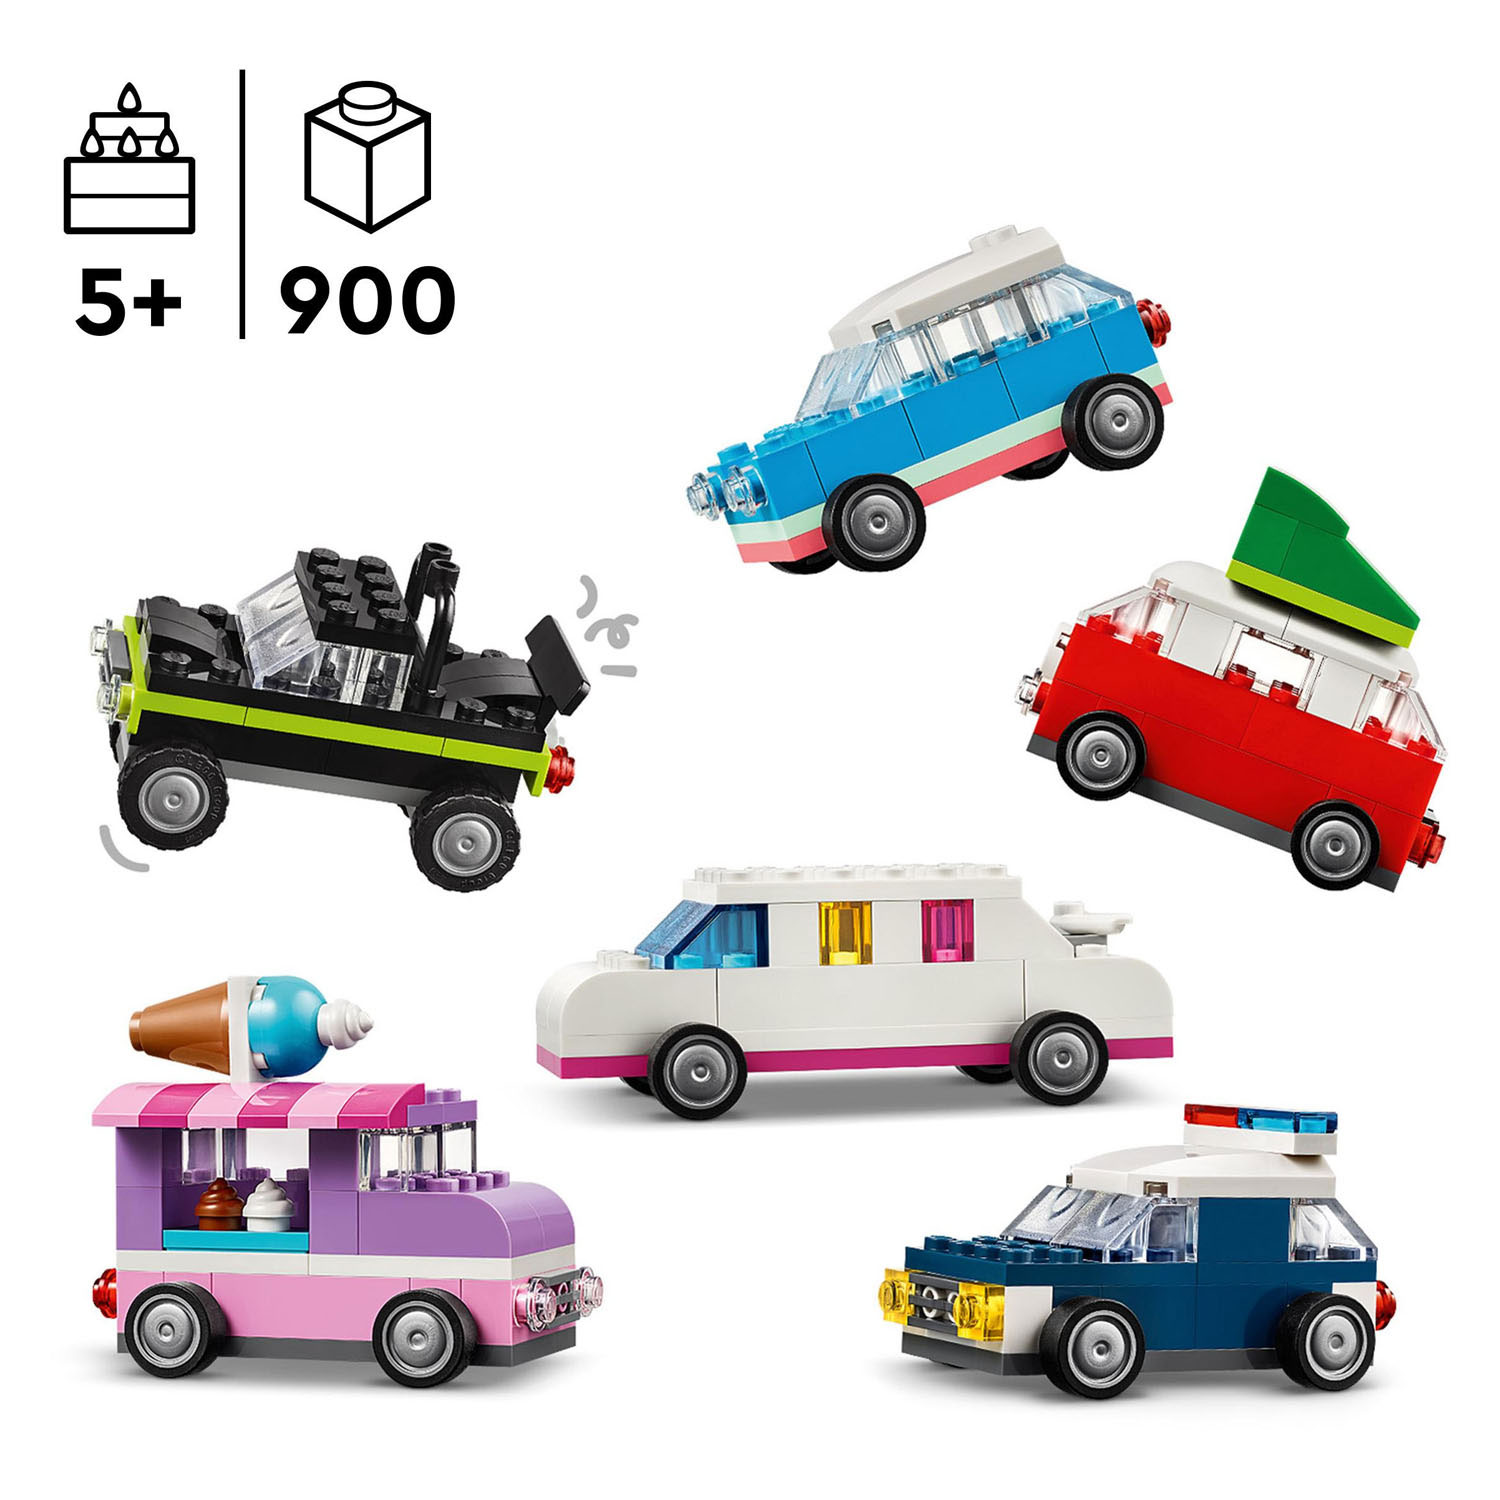 LEGO Classic 11036 Creatieve Voertuigen